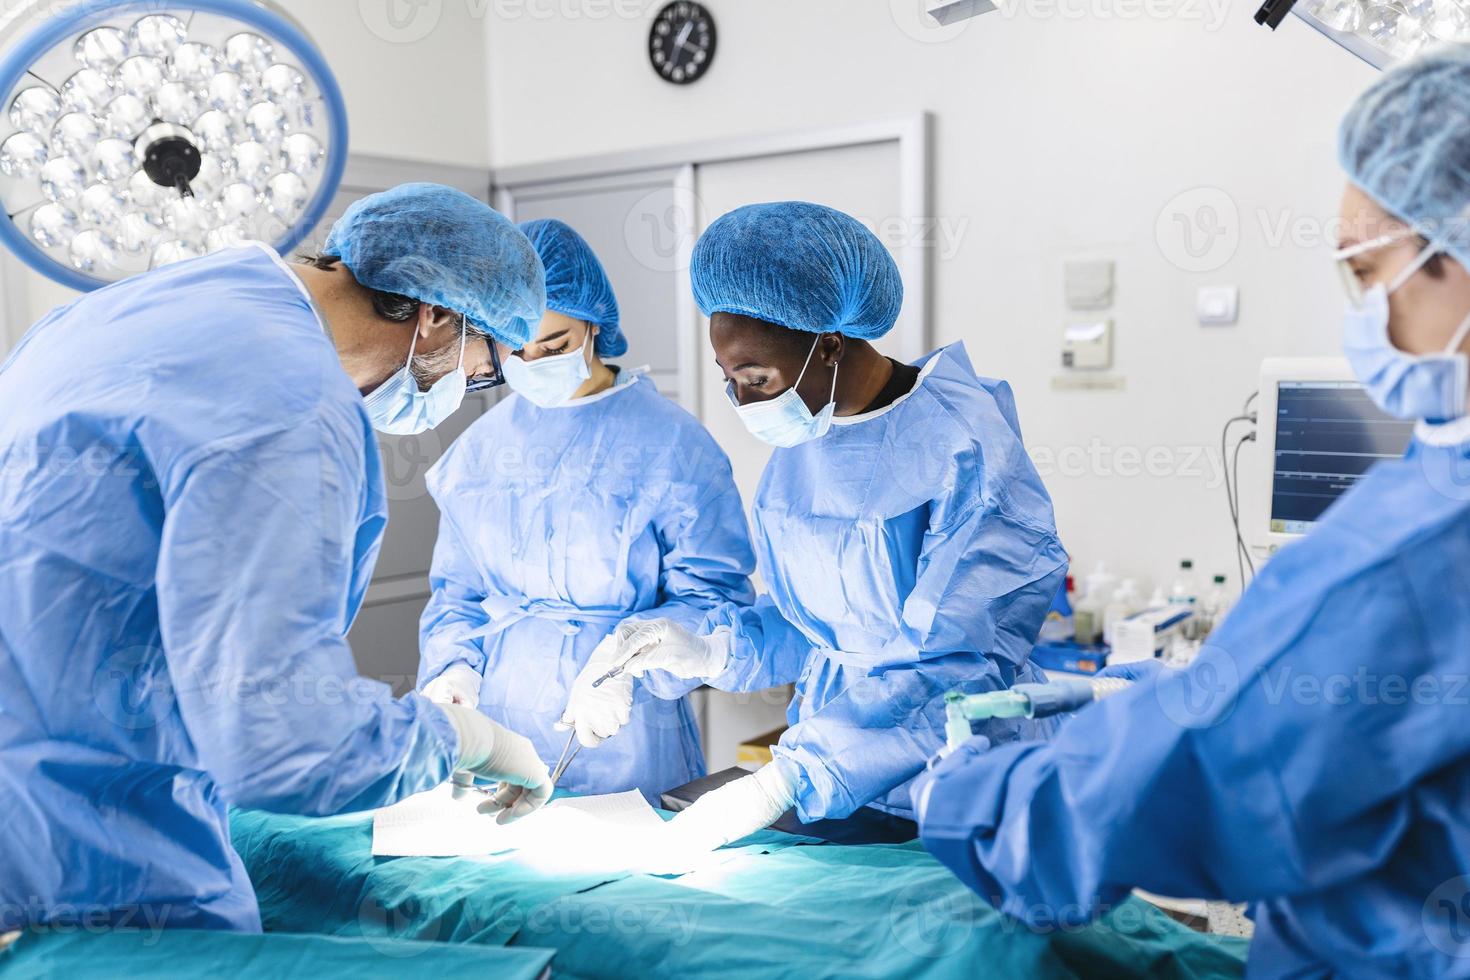 équipe chirurgicale effectuant une intervention chirurgicale dans un théâtre d'opération moderne, équipe de médecins se concentrant sur un patient lors d'une intervention chirurgicale, équipe de médecins travaillant ensemble lors d'une intervention chirurgicale en salle d'opération, photo